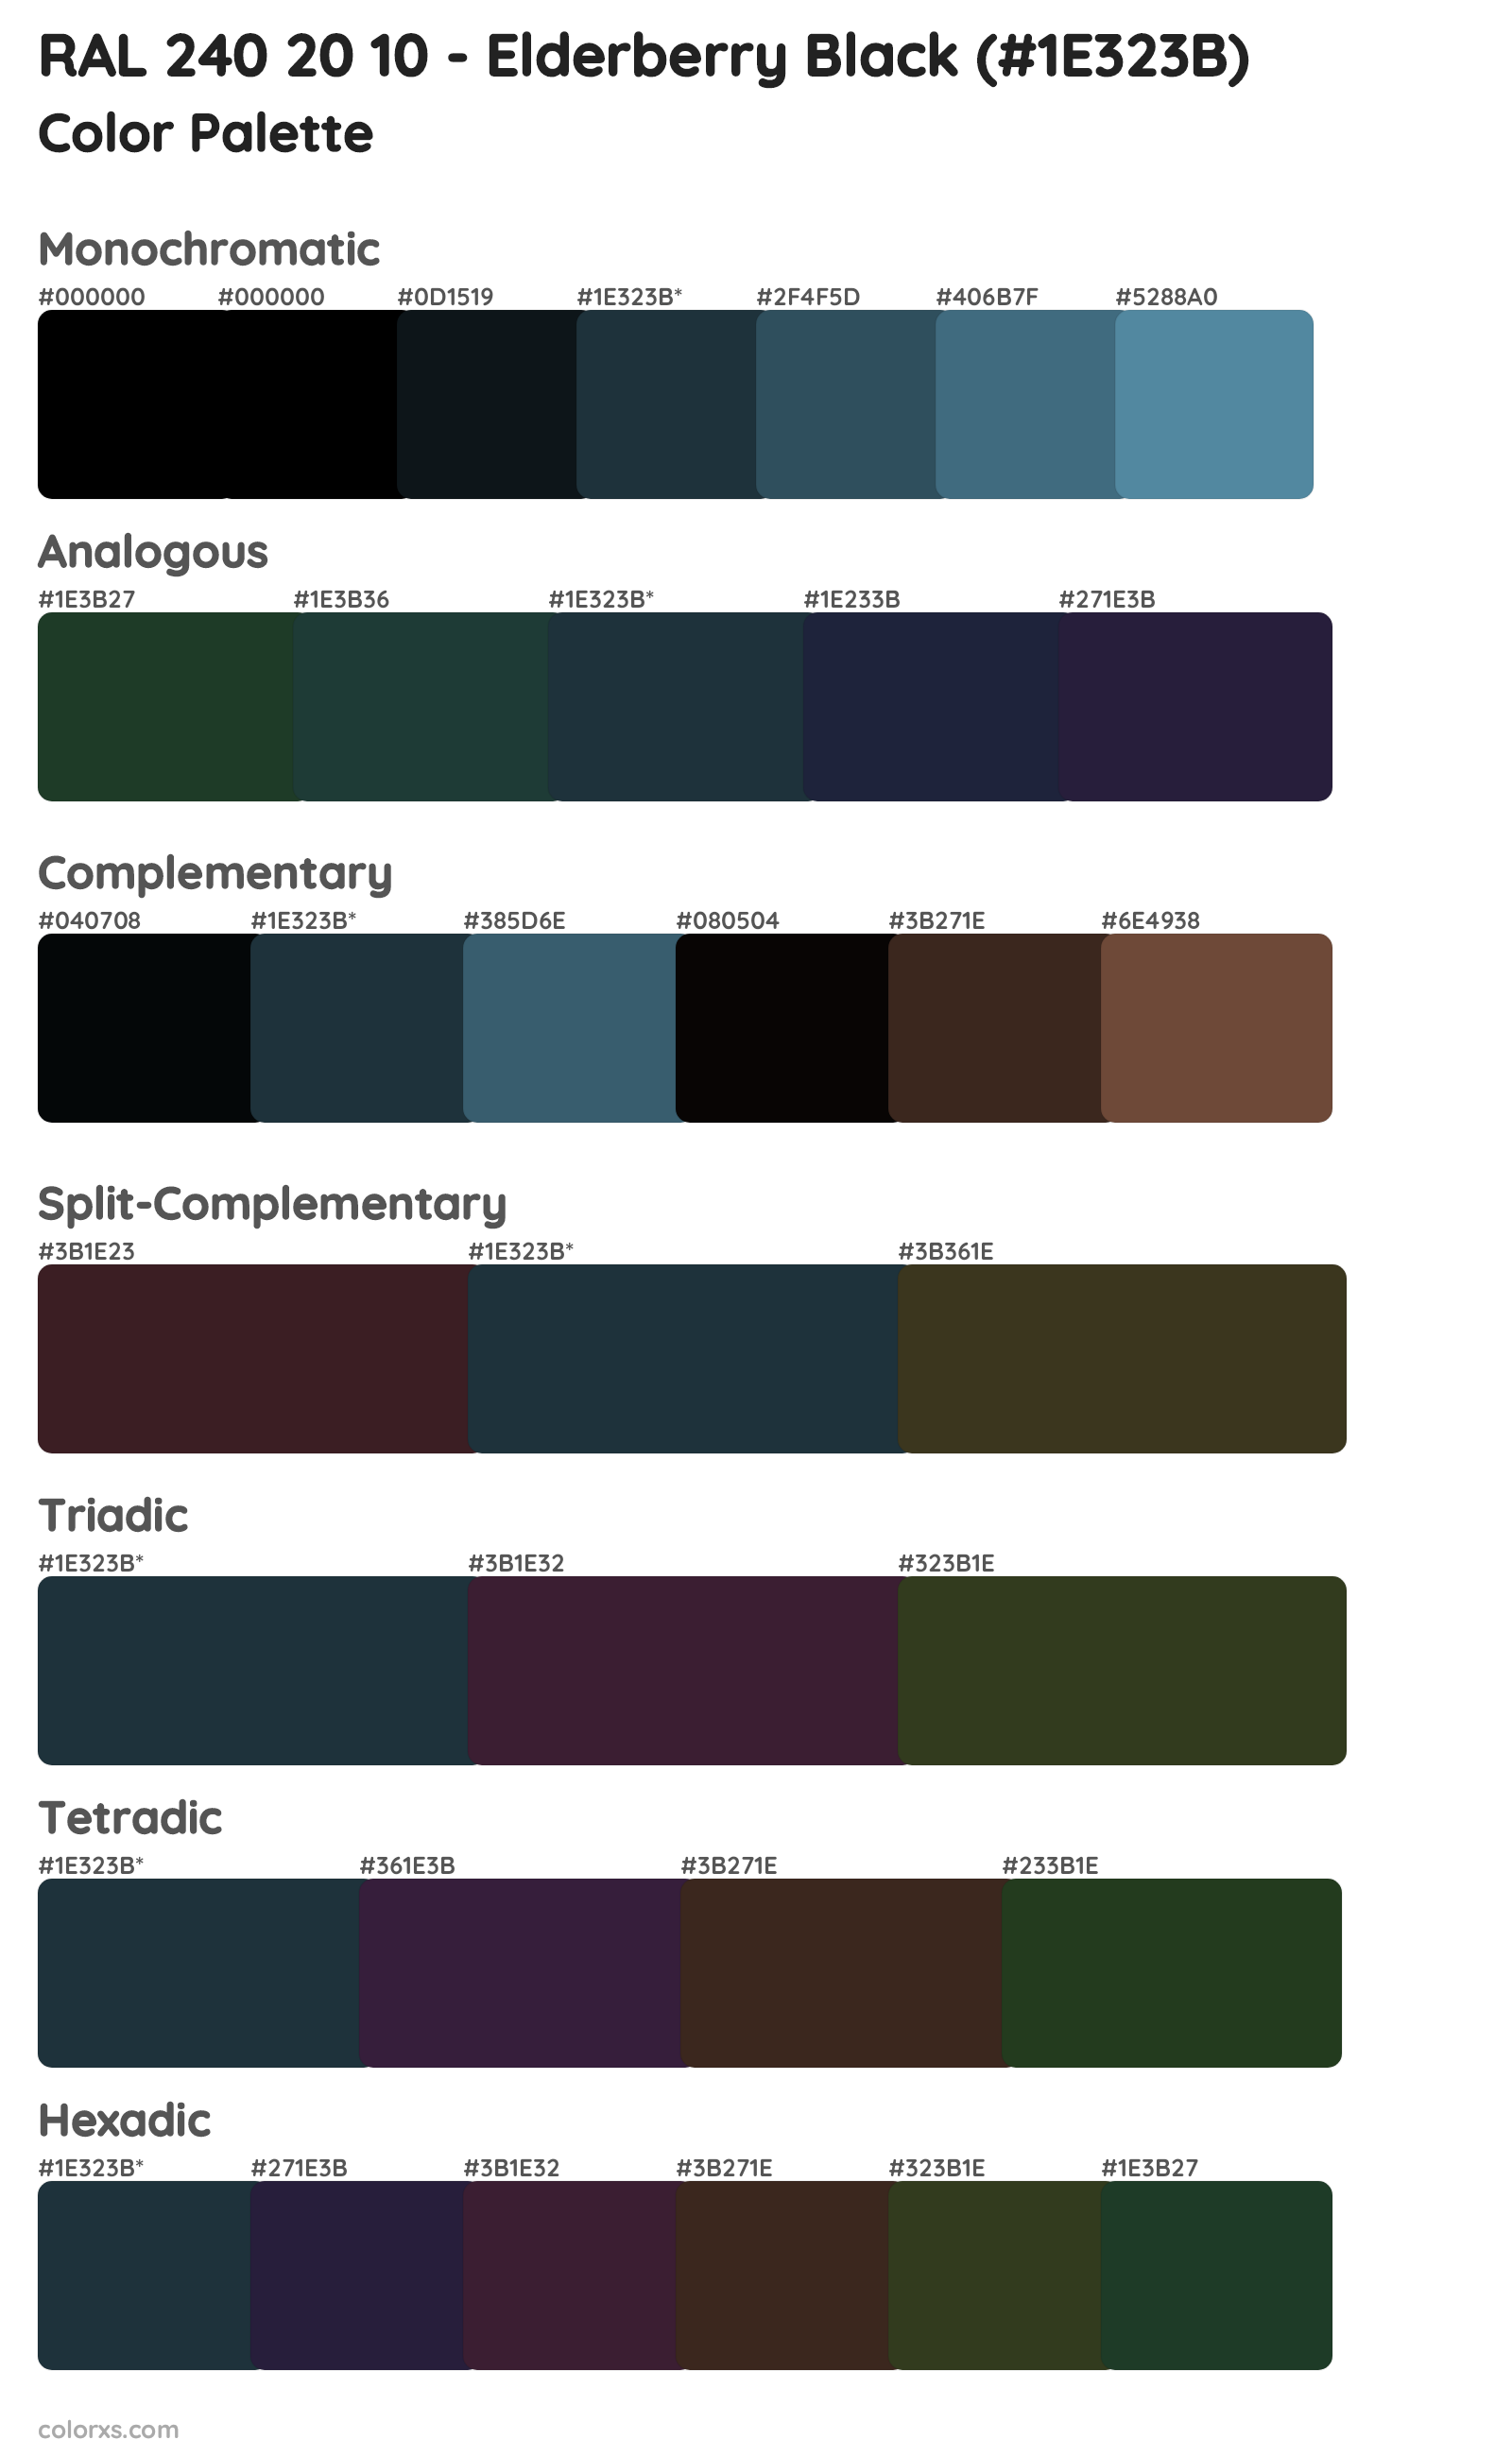 RAL 240 20 10 - Elderberry Black Color Scheme Palettes